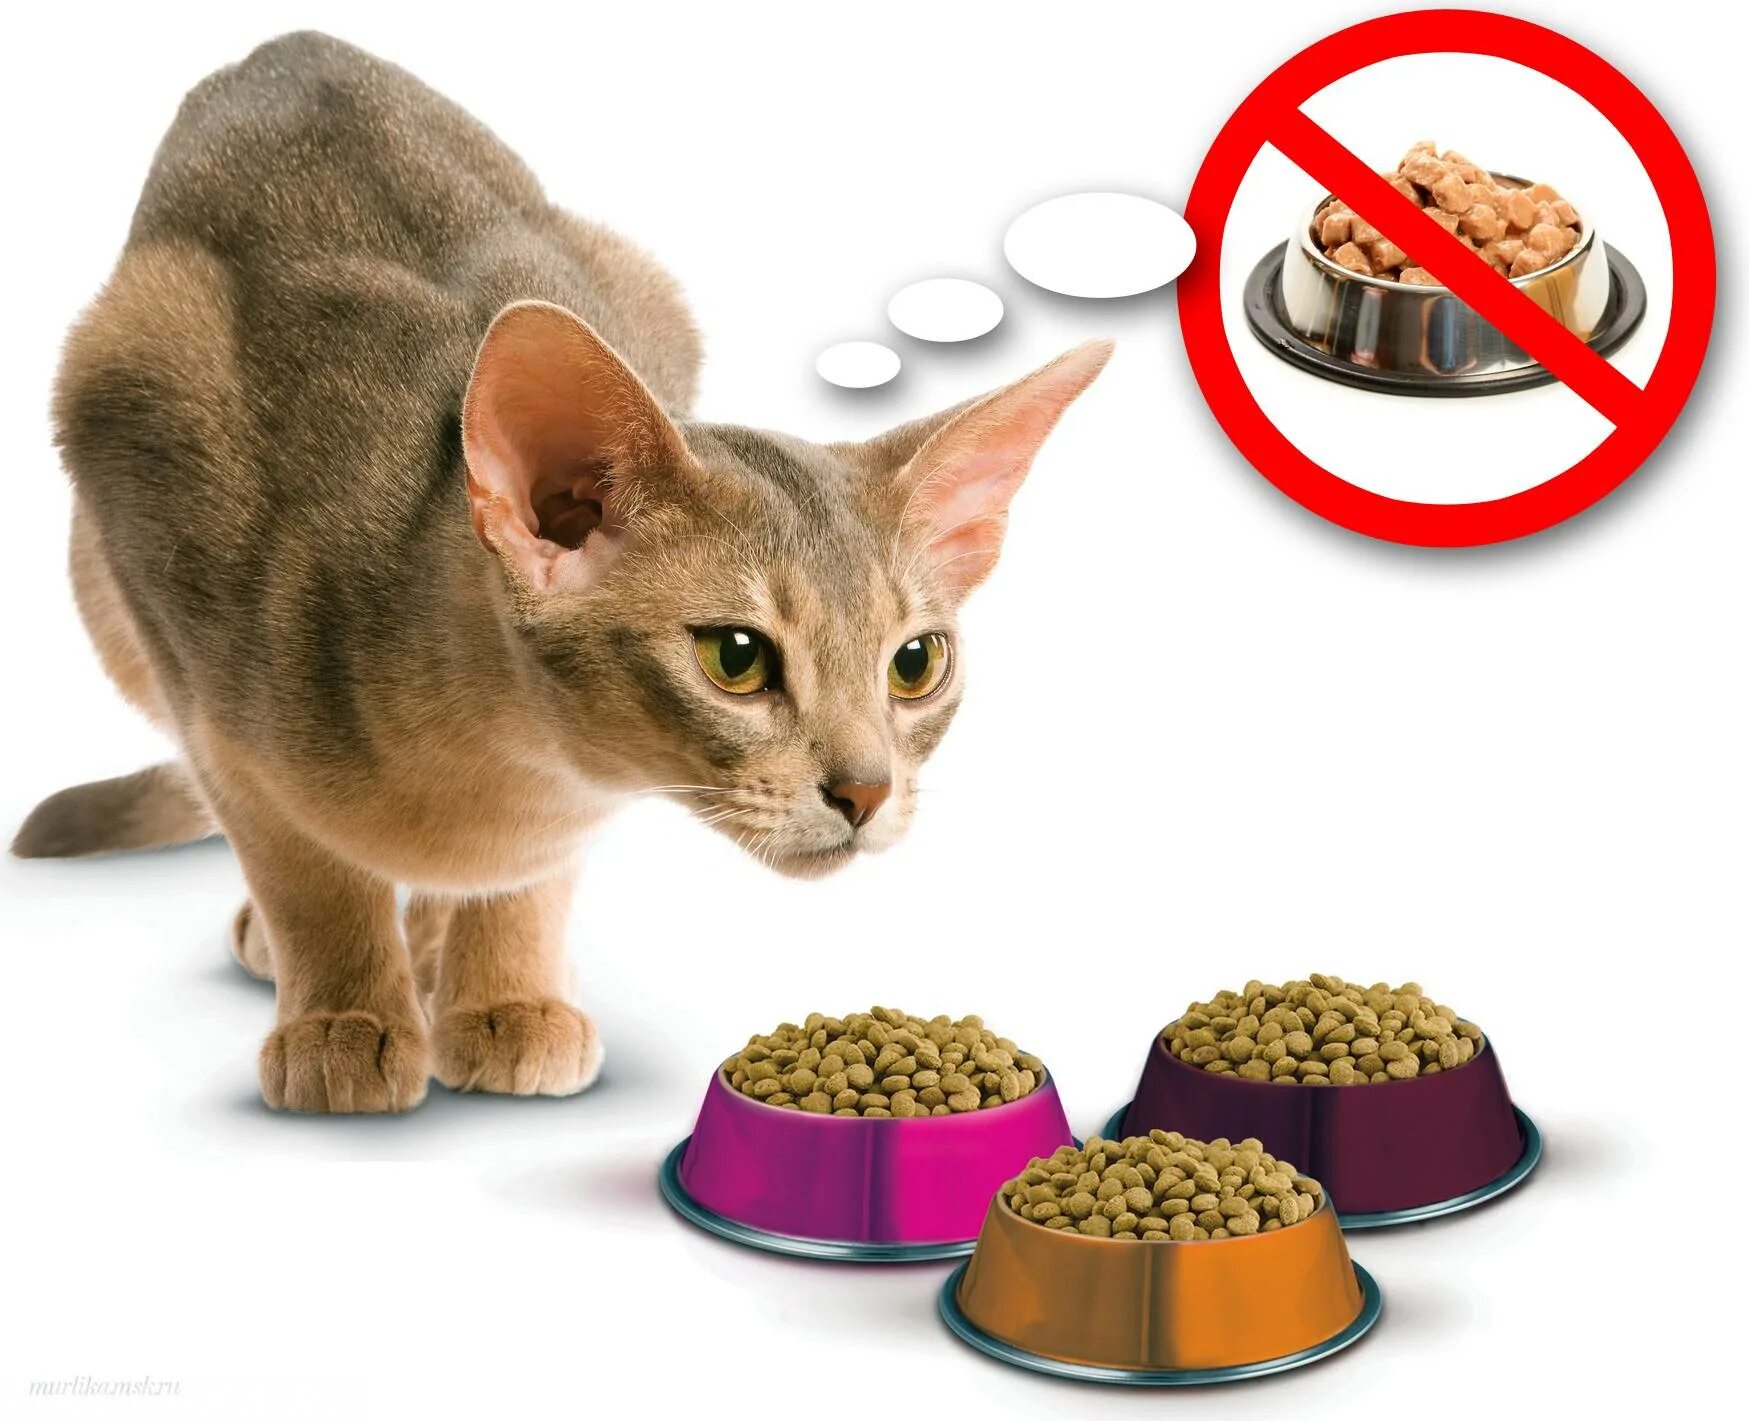 Порция для кота. Корм для кота. Еда для домашних животных. Еда для котов. Сухая еда для кошек.